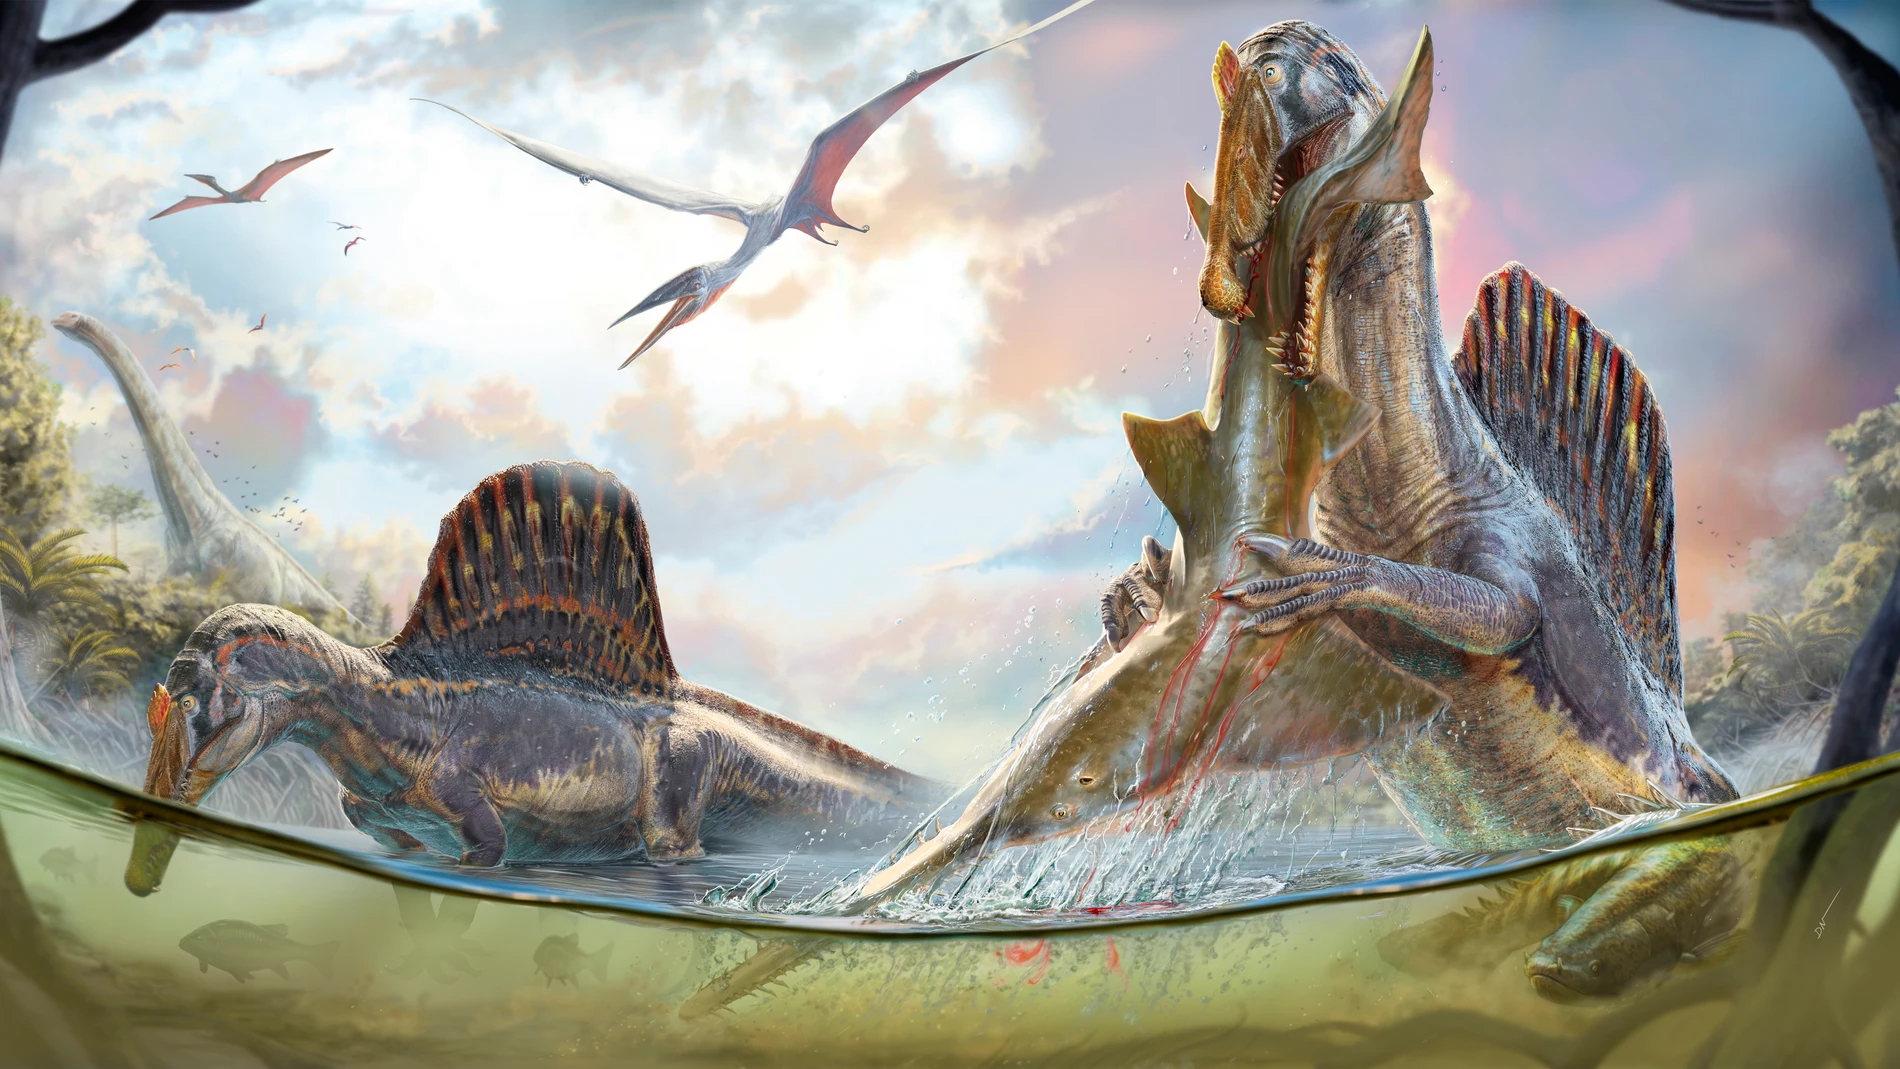 Una pareja de los gigantes depredadores con velas en la espalda, Spinosaurus aegyptiacus, se adentran en aguas cercanas a la costa en busca de presas mientras pterosaurios surcan los cielos hace aproximadamente 95 millones de años en la costa norte de África.